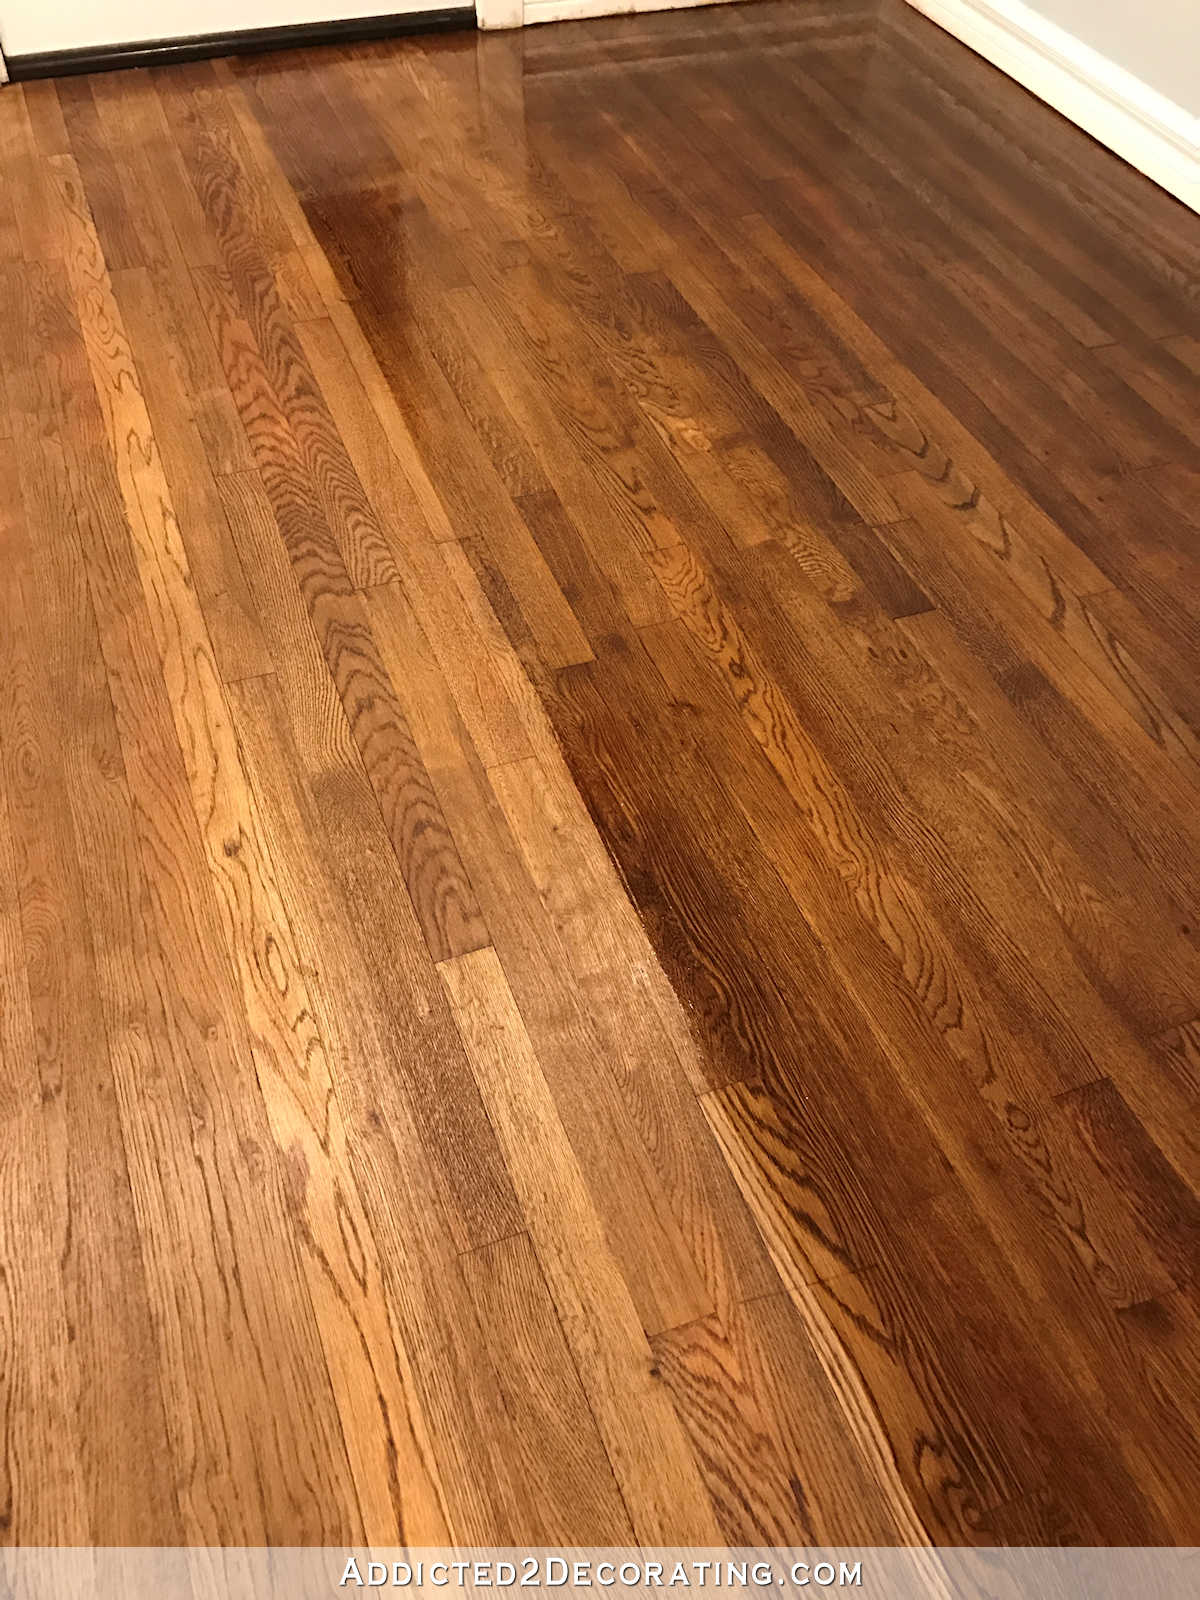 The Hardwood Floor Refinishing